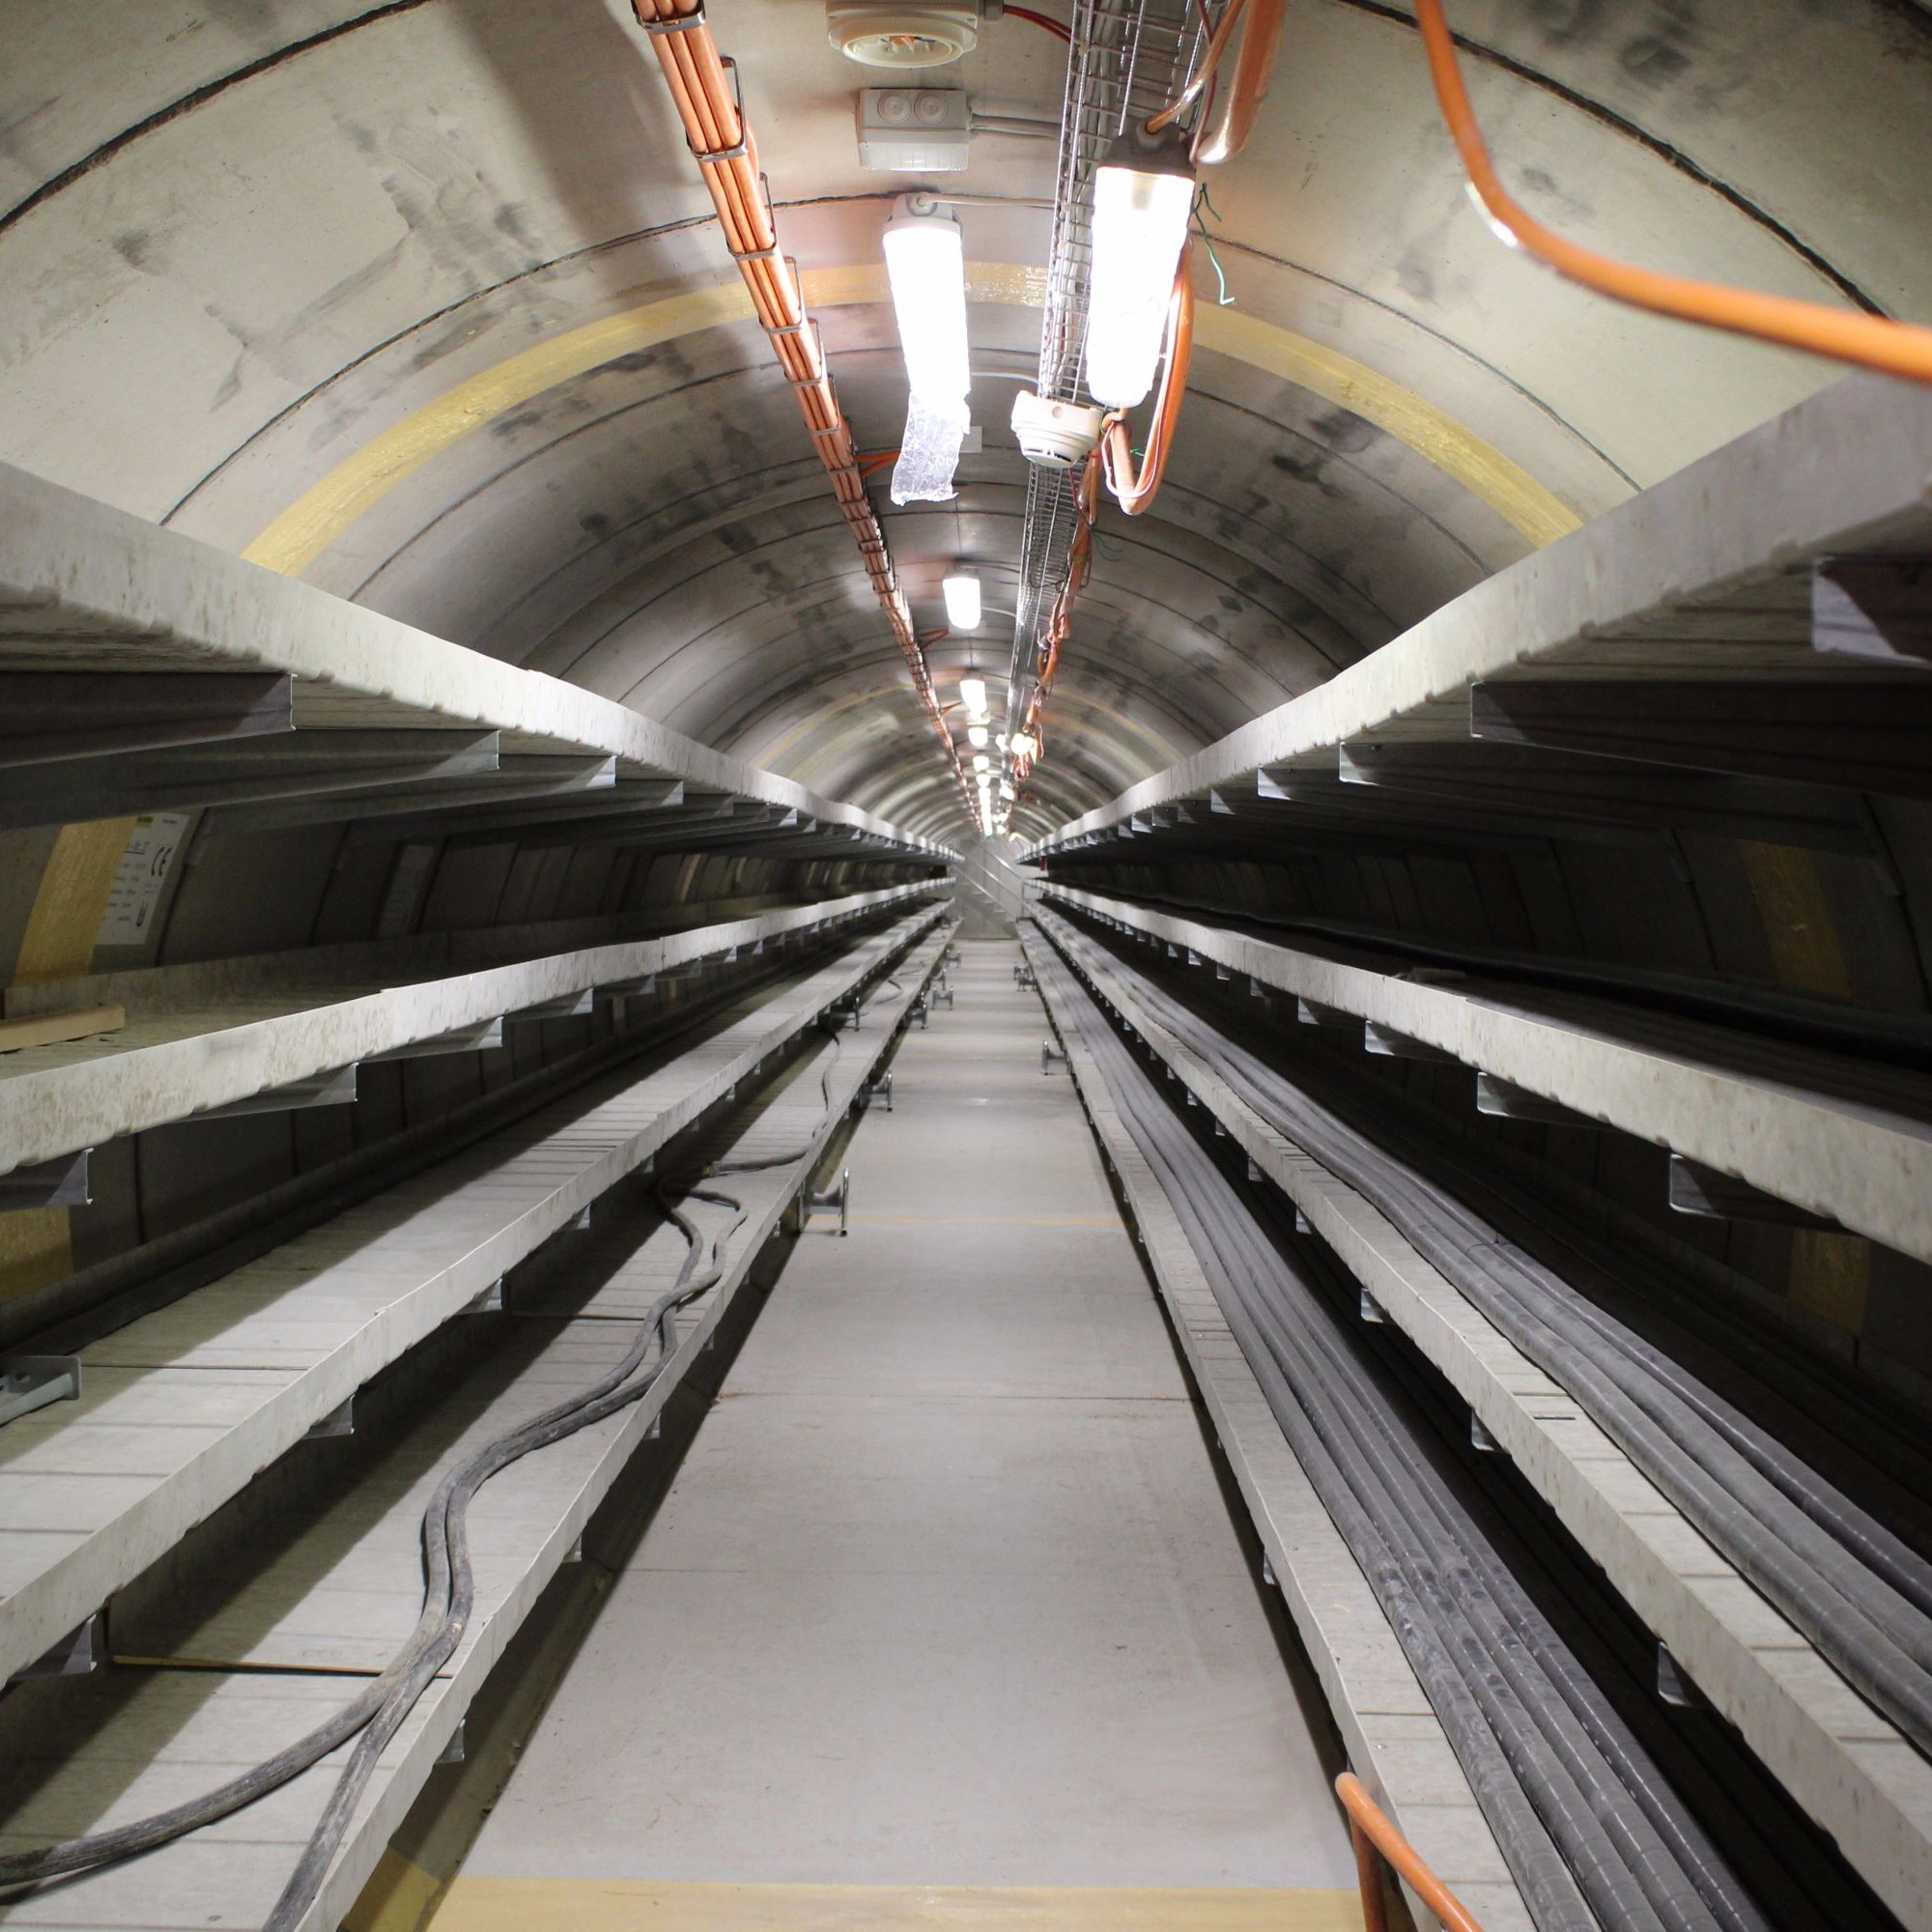 Einblick in den Kabelstollen unter dem Gleisgeflecht, der im Microtunneling-Verfahren gebaut wurde.